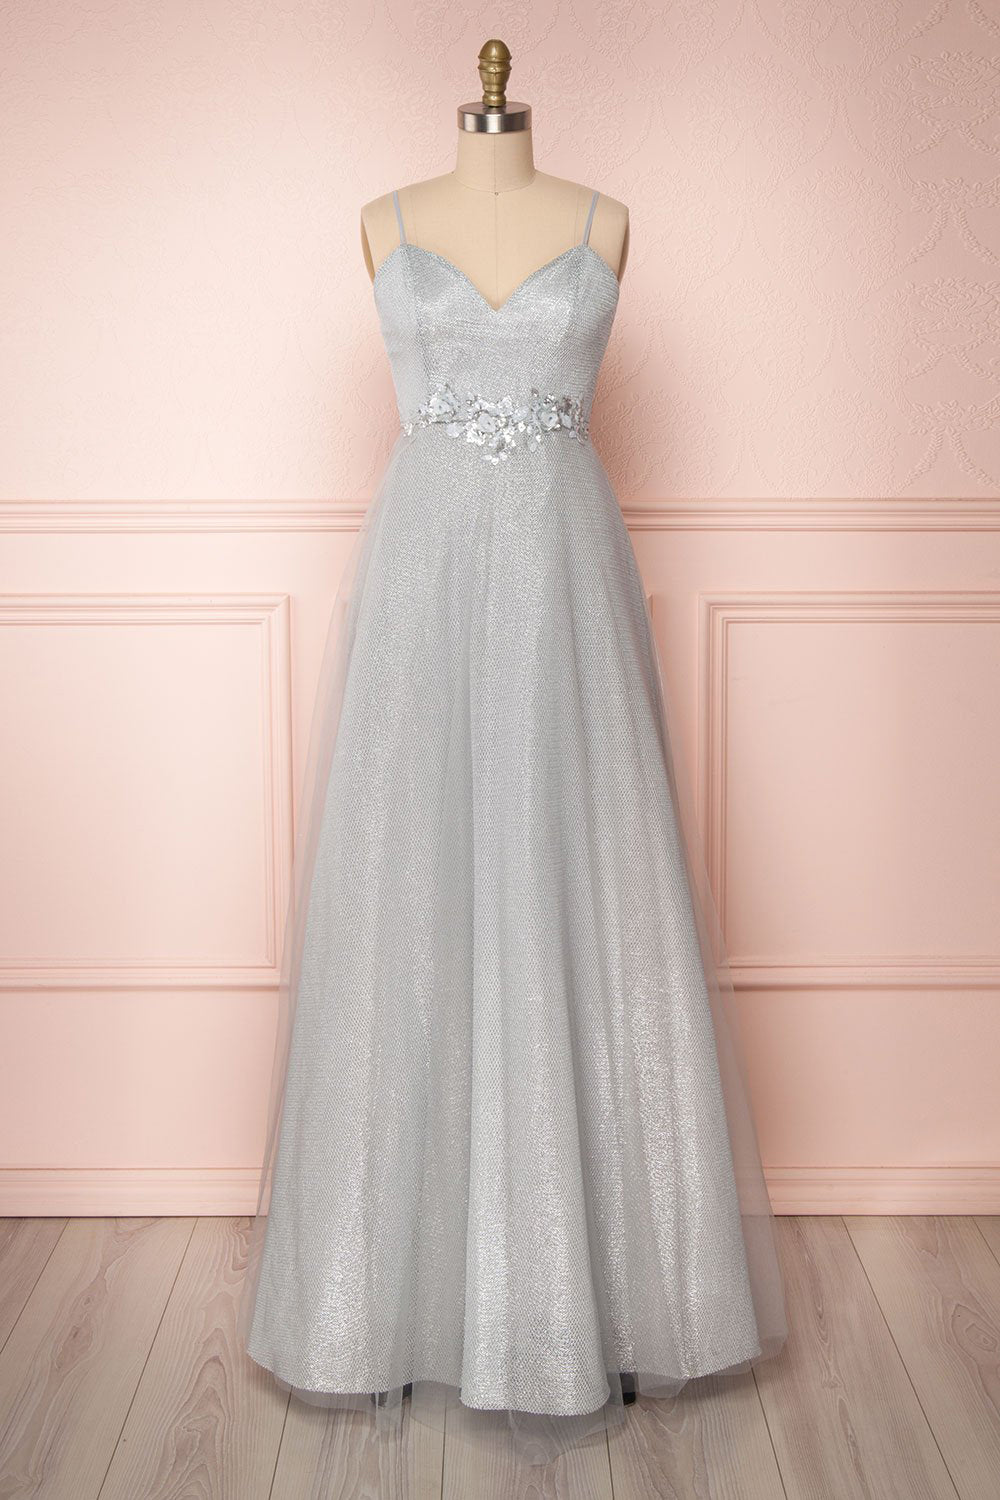 grey sparkly dress